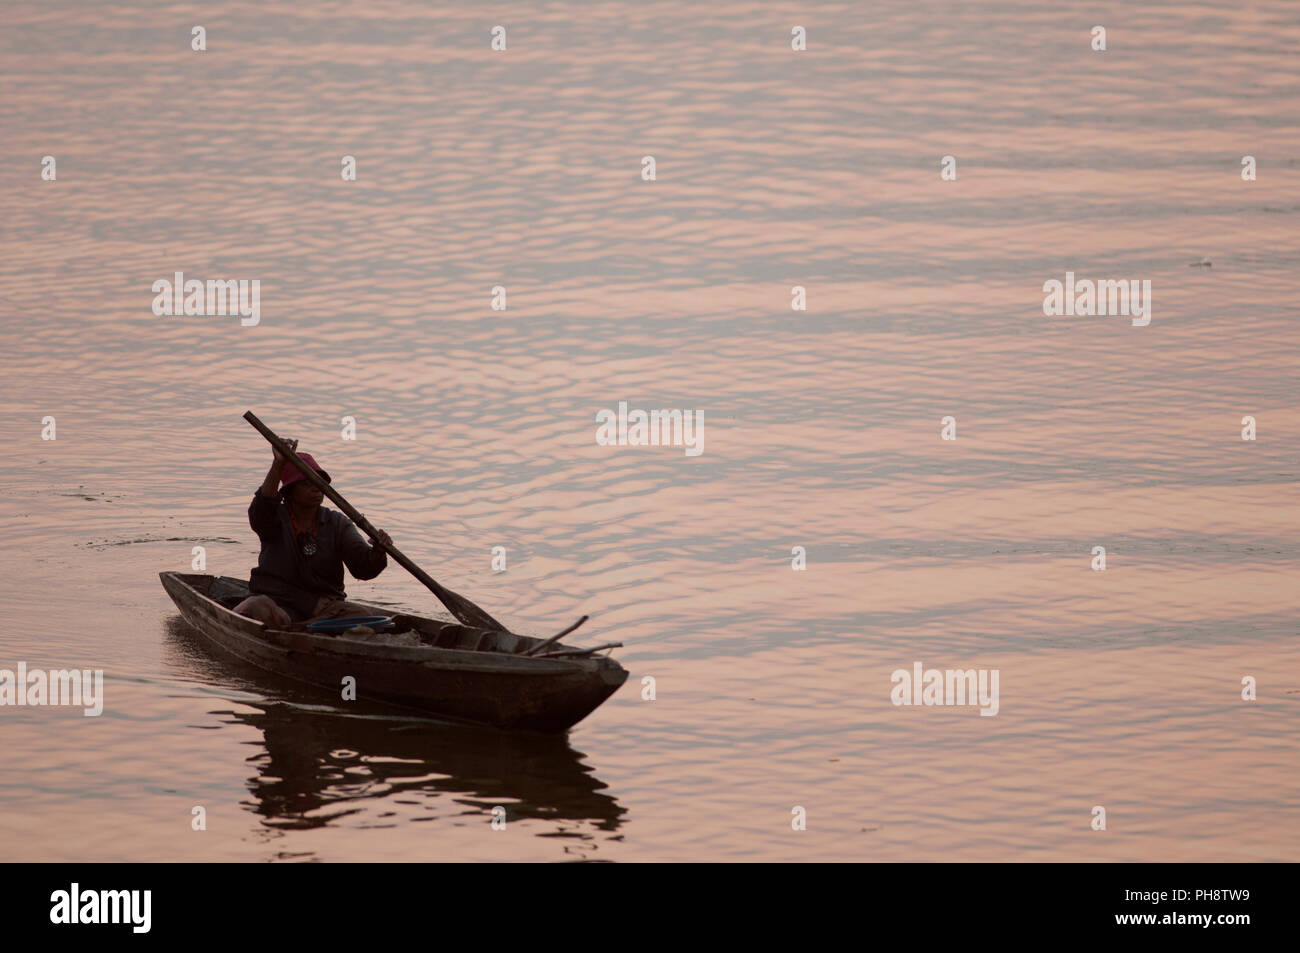 Tailandia, Phatthalung, pescador, barco Sunrise Pêcheur en barca au Sud du soleil, palanca Thaïlande Foto de stock